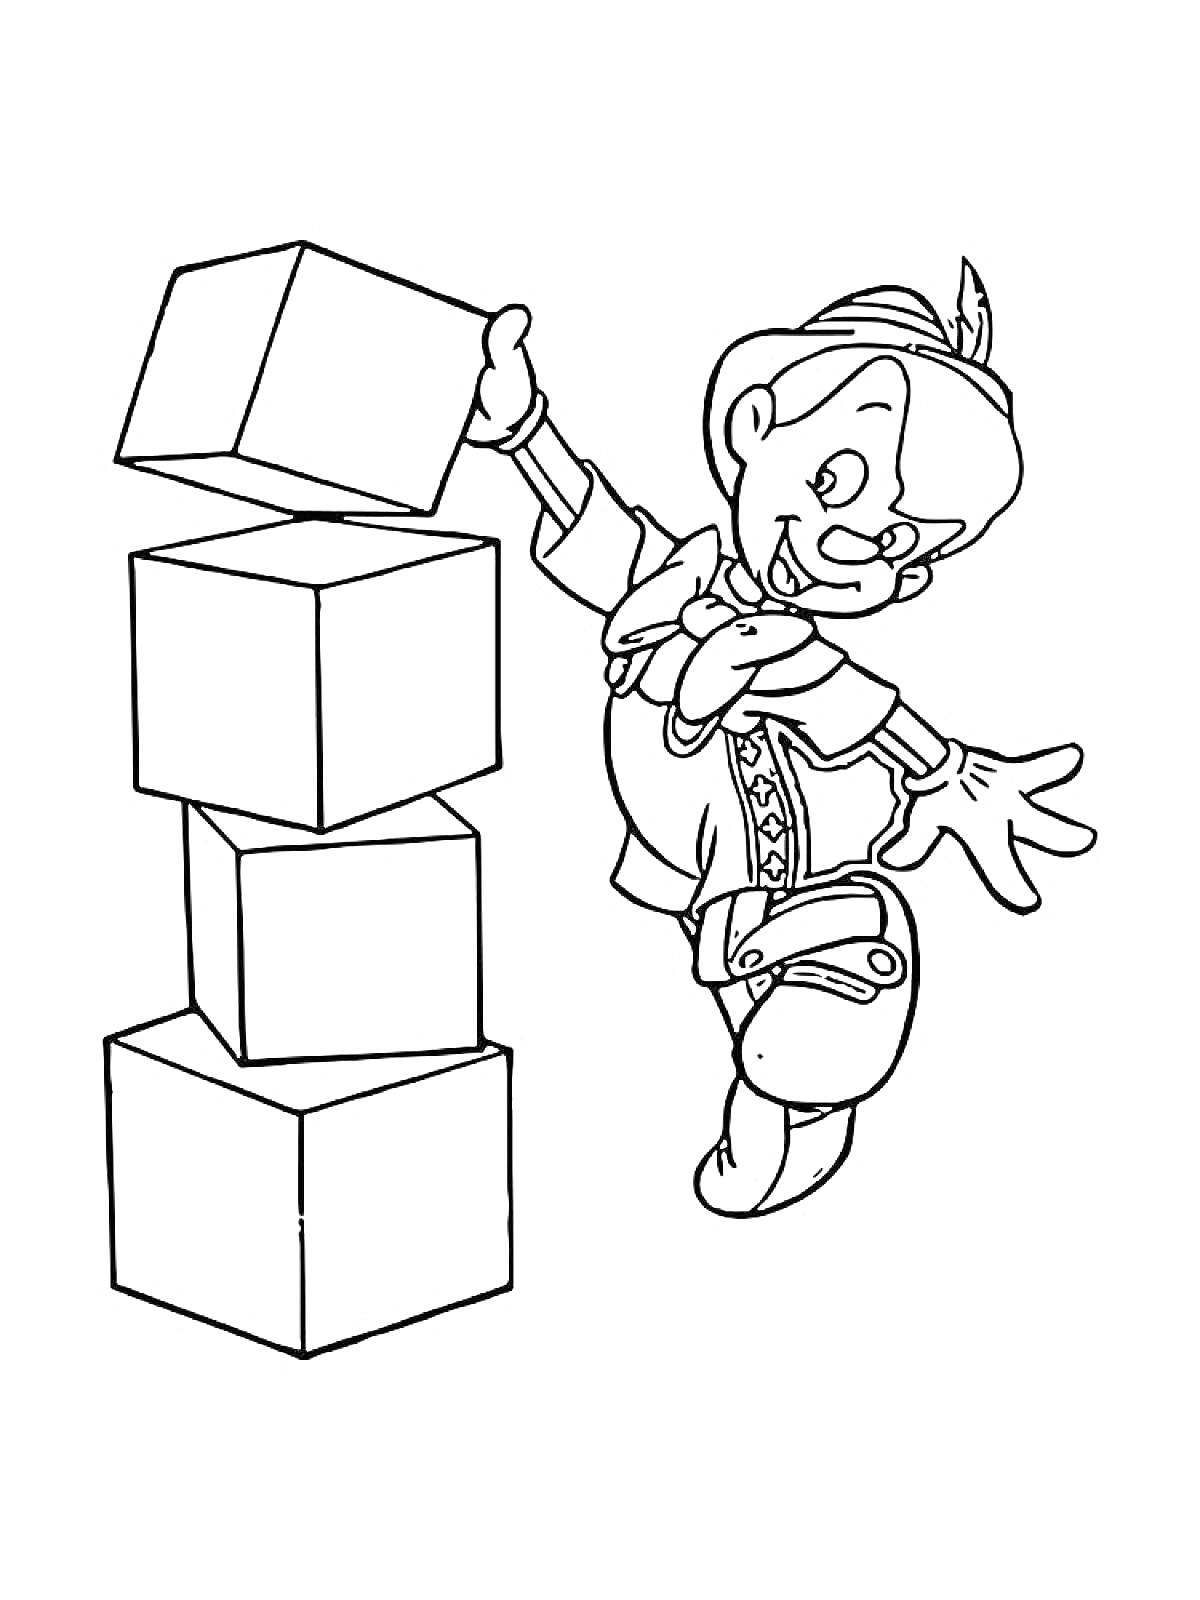 Раскраска Человек играет с кубиками, держа верхний кубик на башне из четырёх кубиков